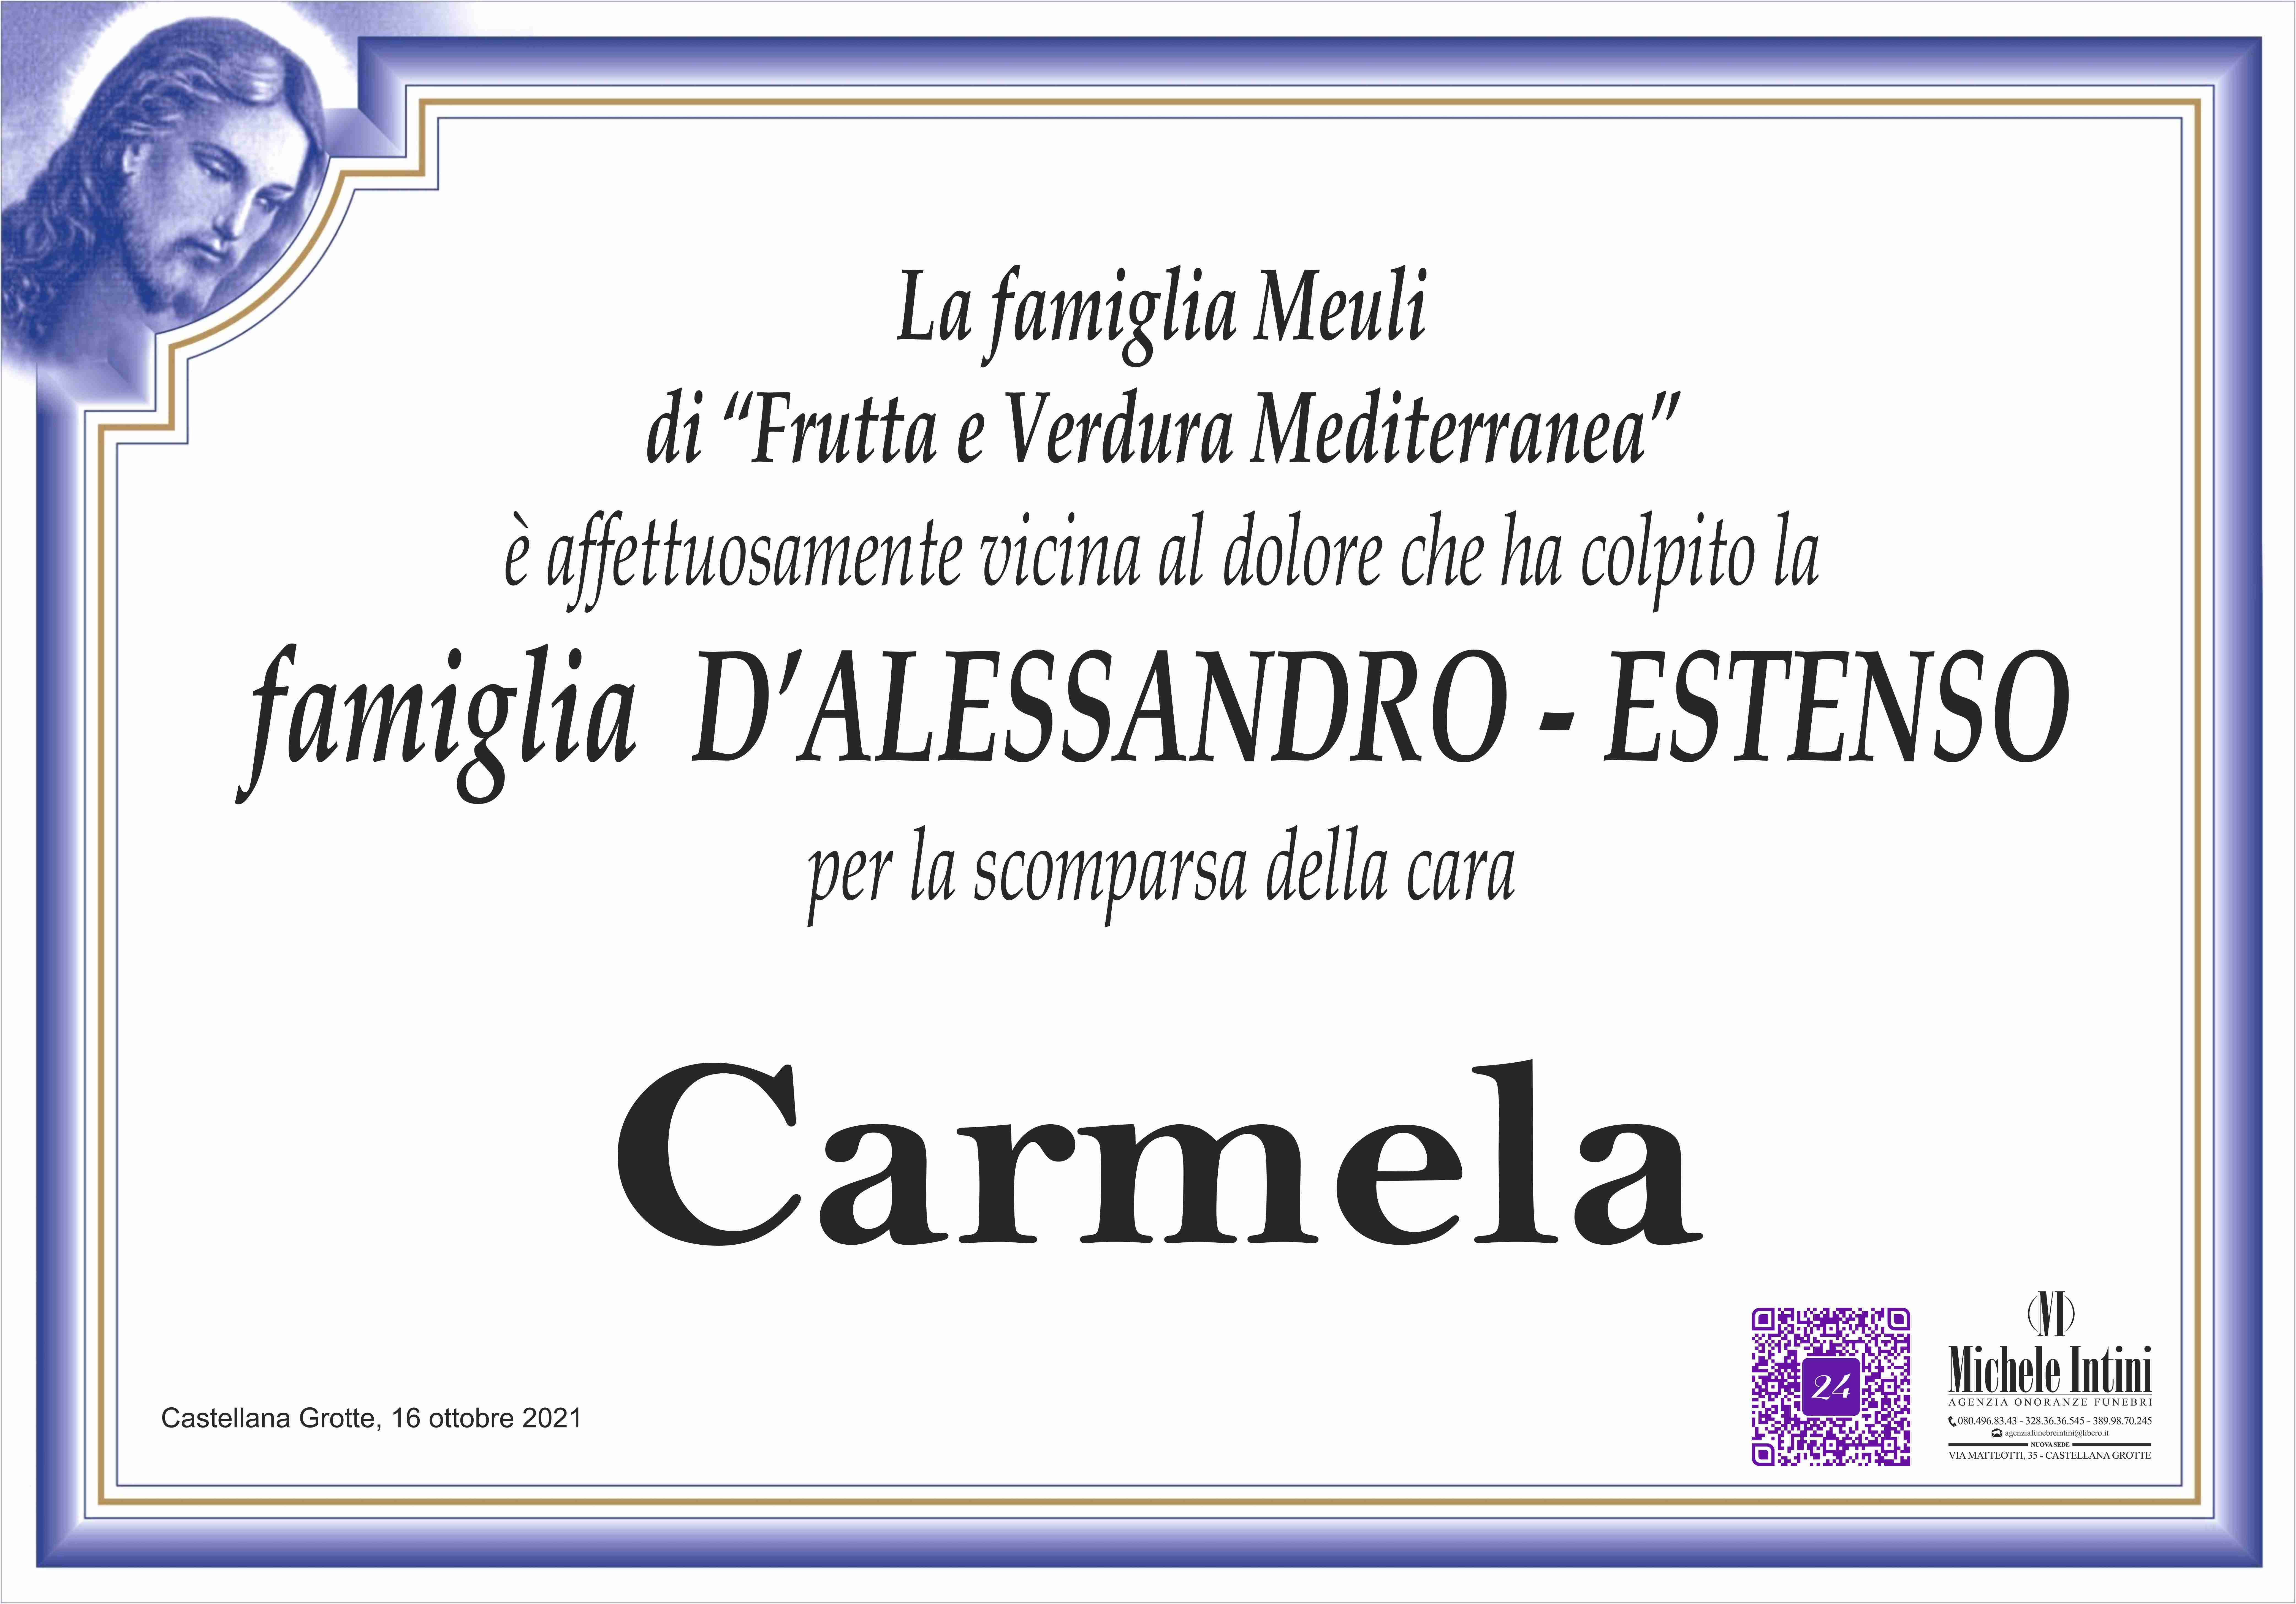 Carmela Estenso